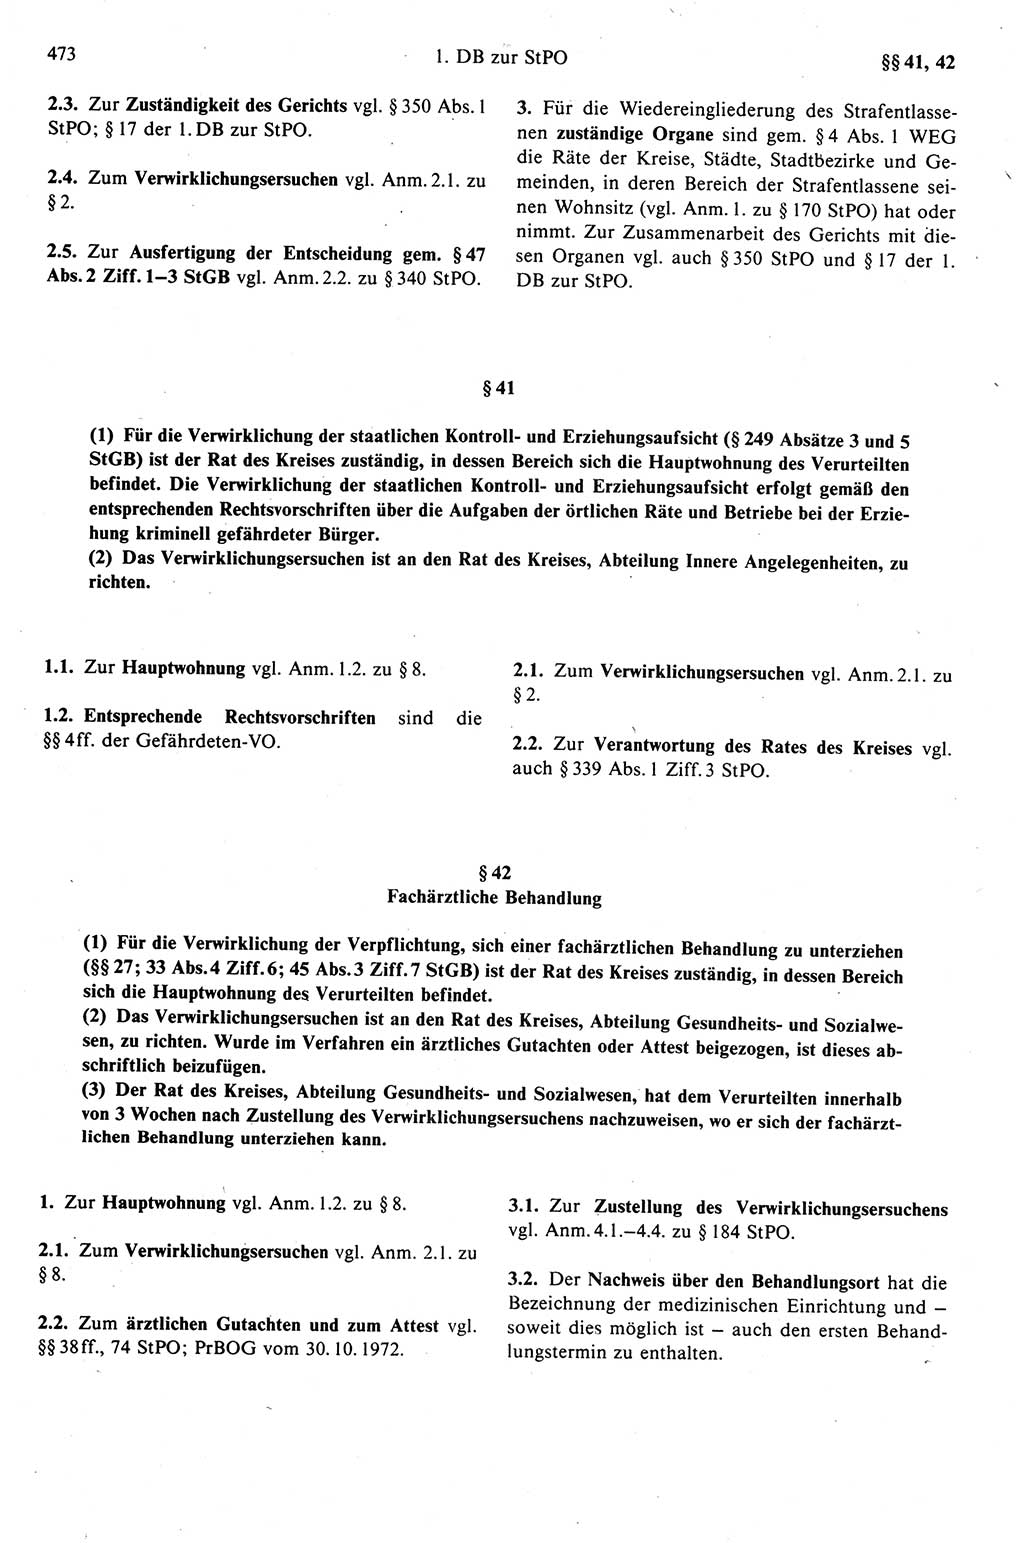 Strafprozeßrecht der DDR (Deutsche Demokratische Republik), Kommentar zur Strafprozeßordnung (StPO) 1989, Seite 473 (Strafprozeßr. DDR Komm. StPO 1989, S. 473)